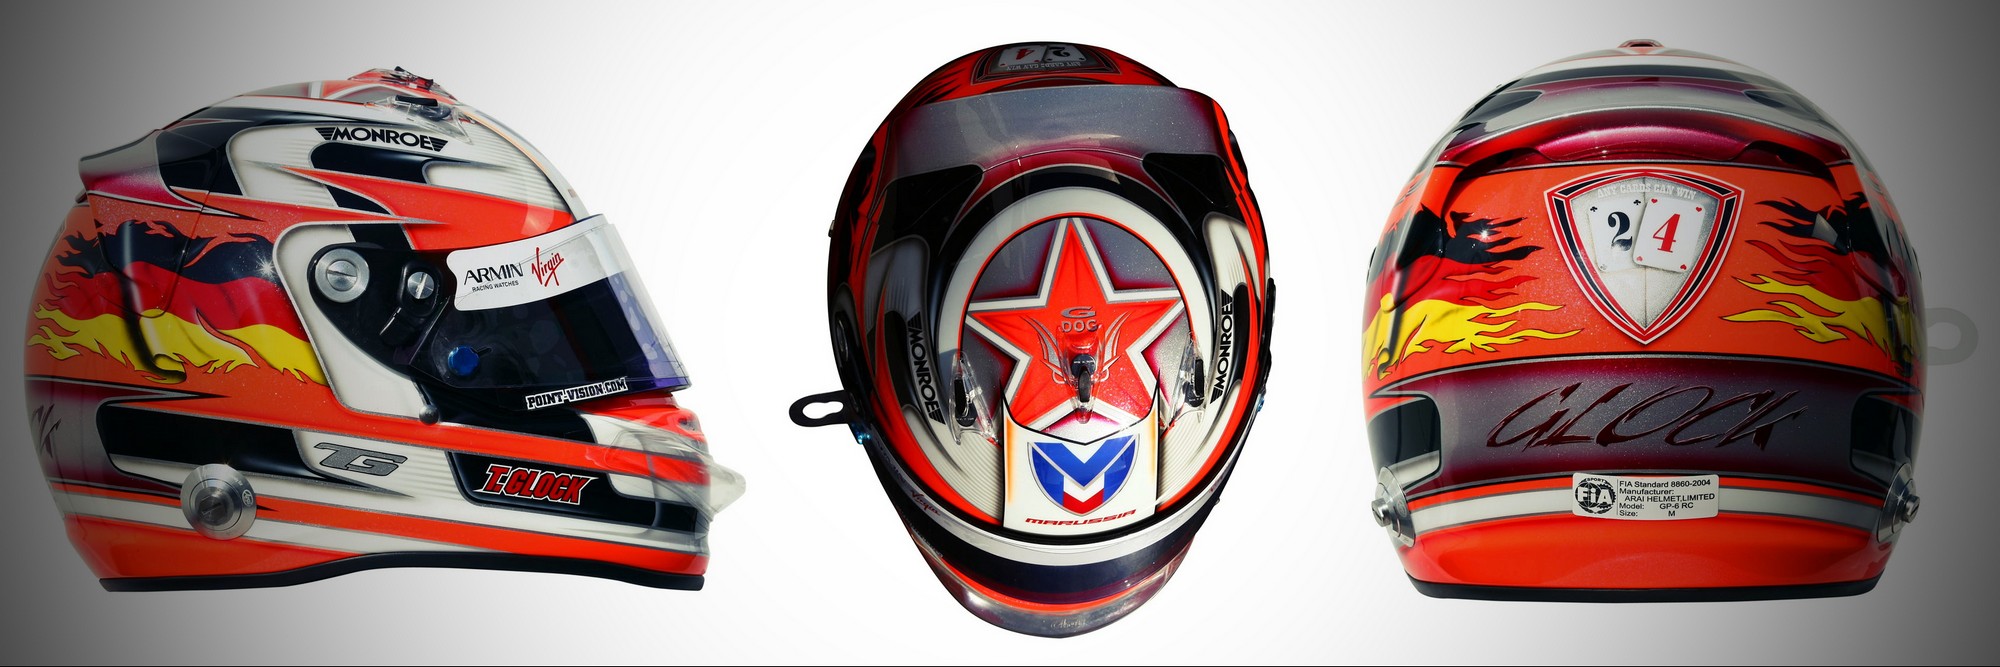 Шлем Тимо Глока на сезон 2011 года | 2011 helmet of Timo Glock